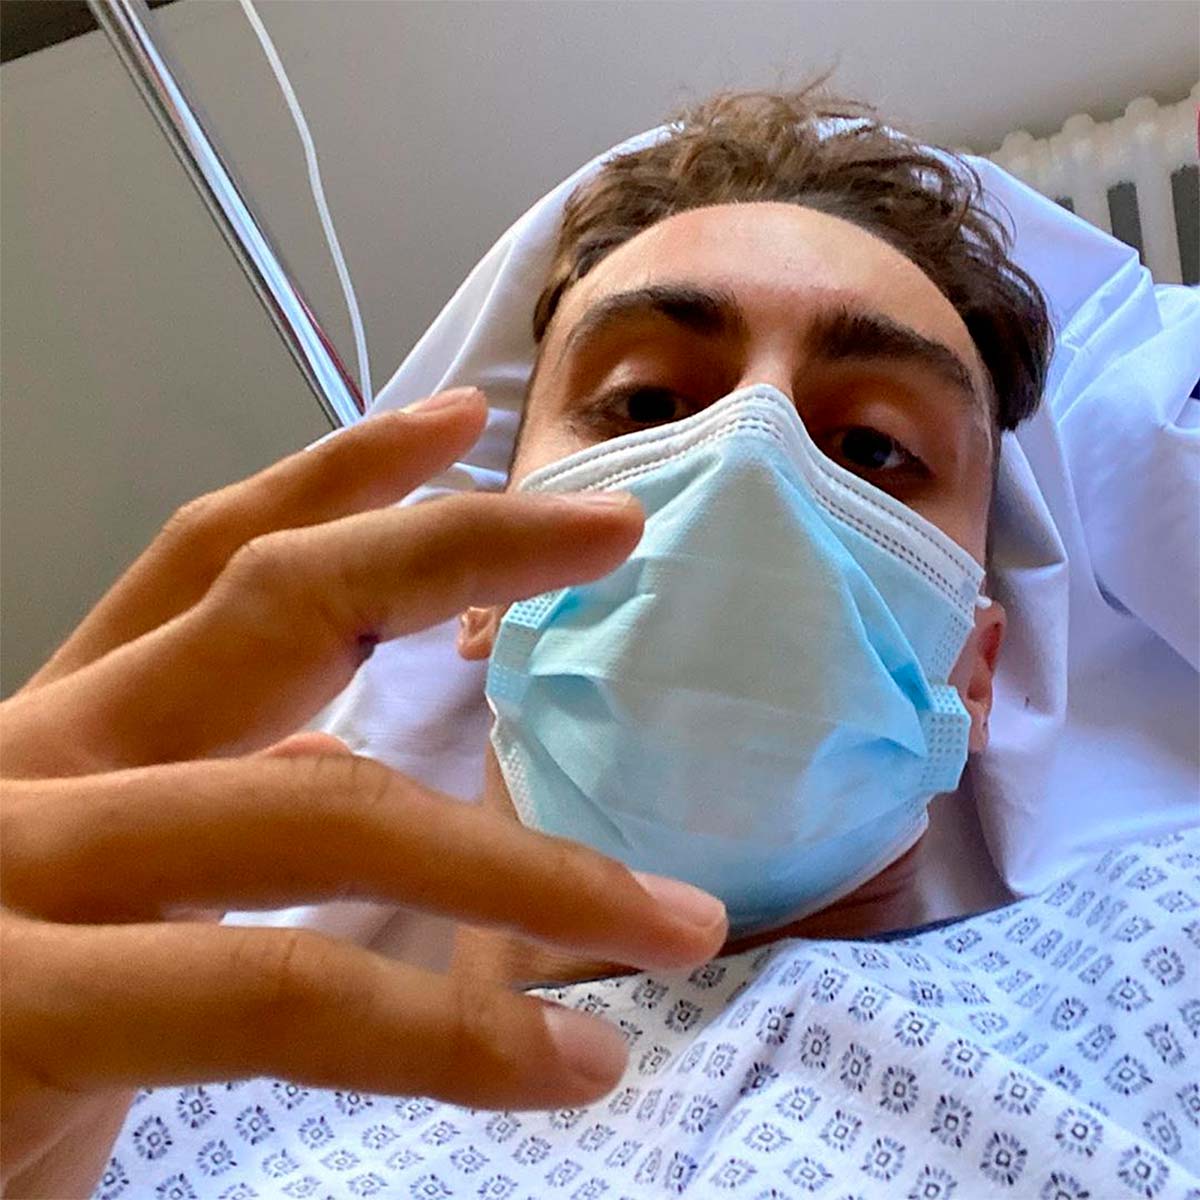 En TodoMountainBike: Amaury Pierron se lesiona gravemente en el Campeonato de Francia de Descenso